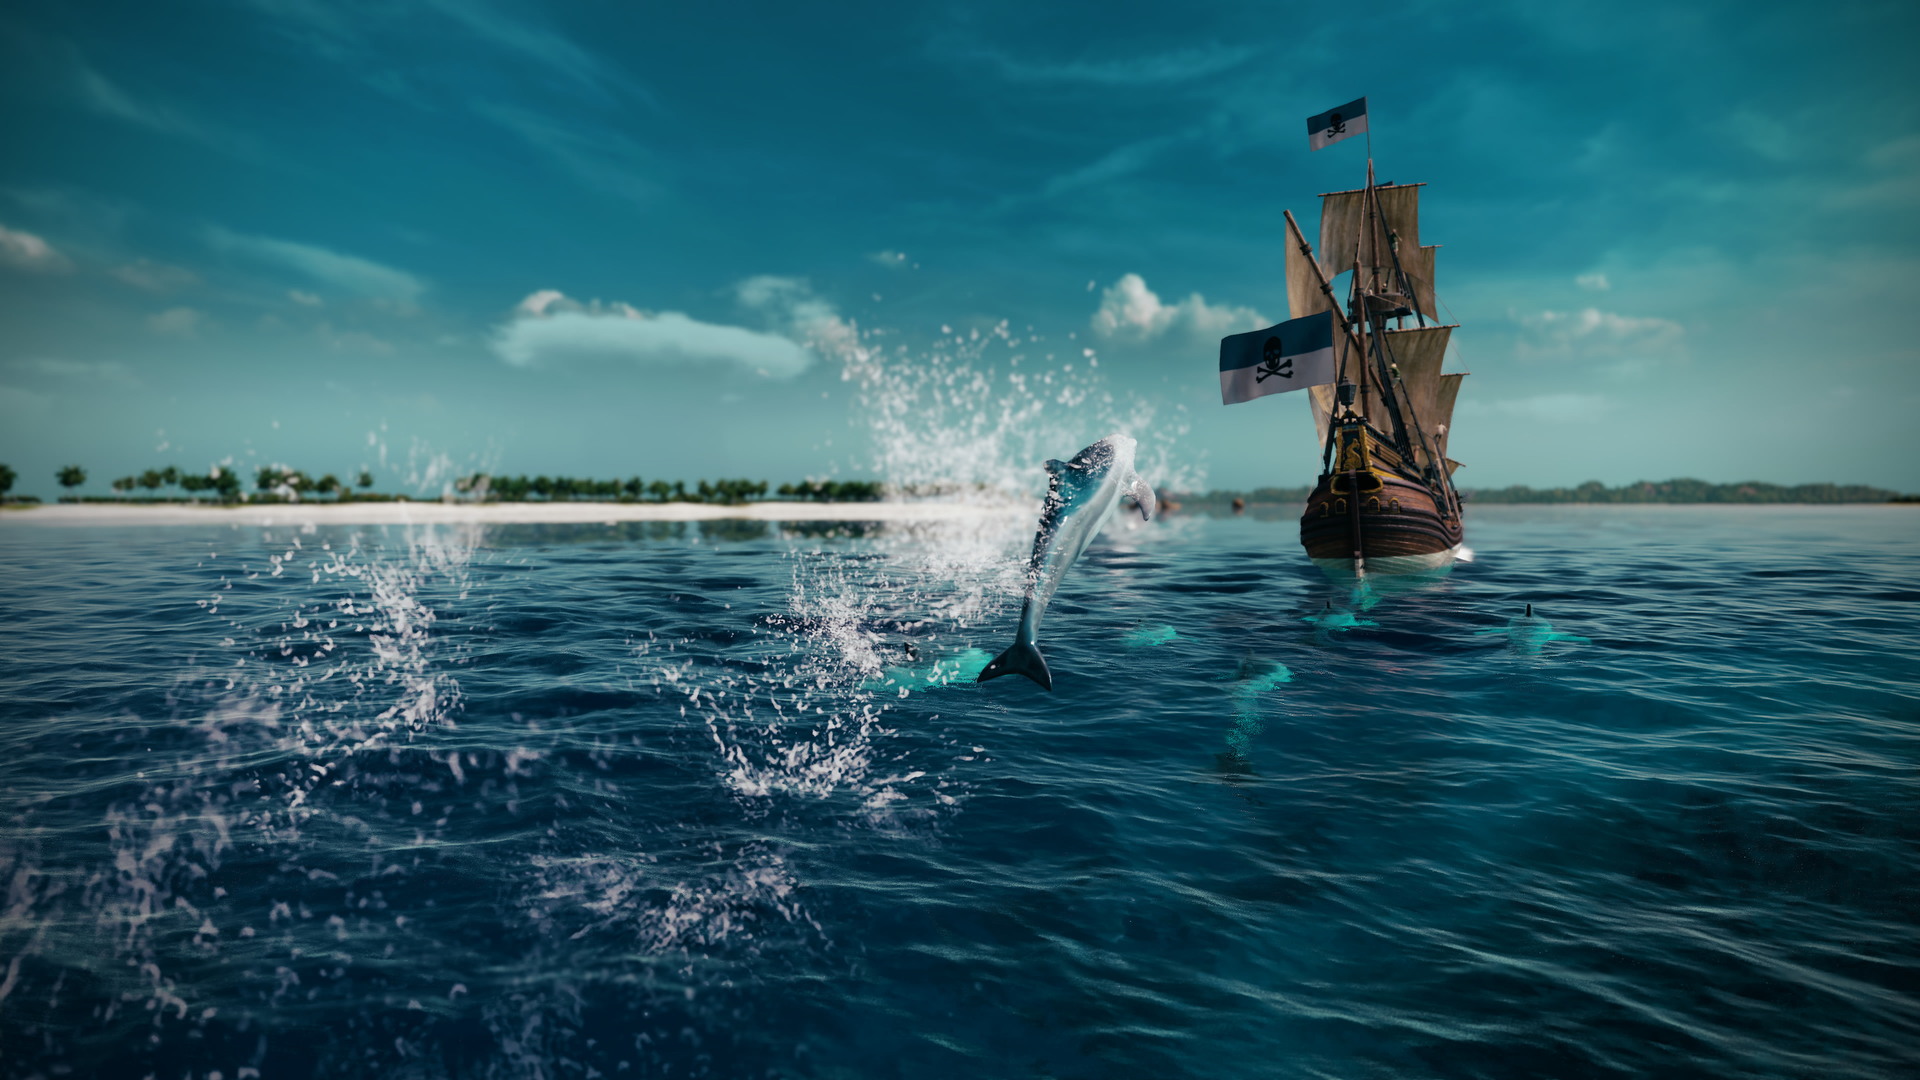 Tortuga: A Pirate's Tale - screenshot 6